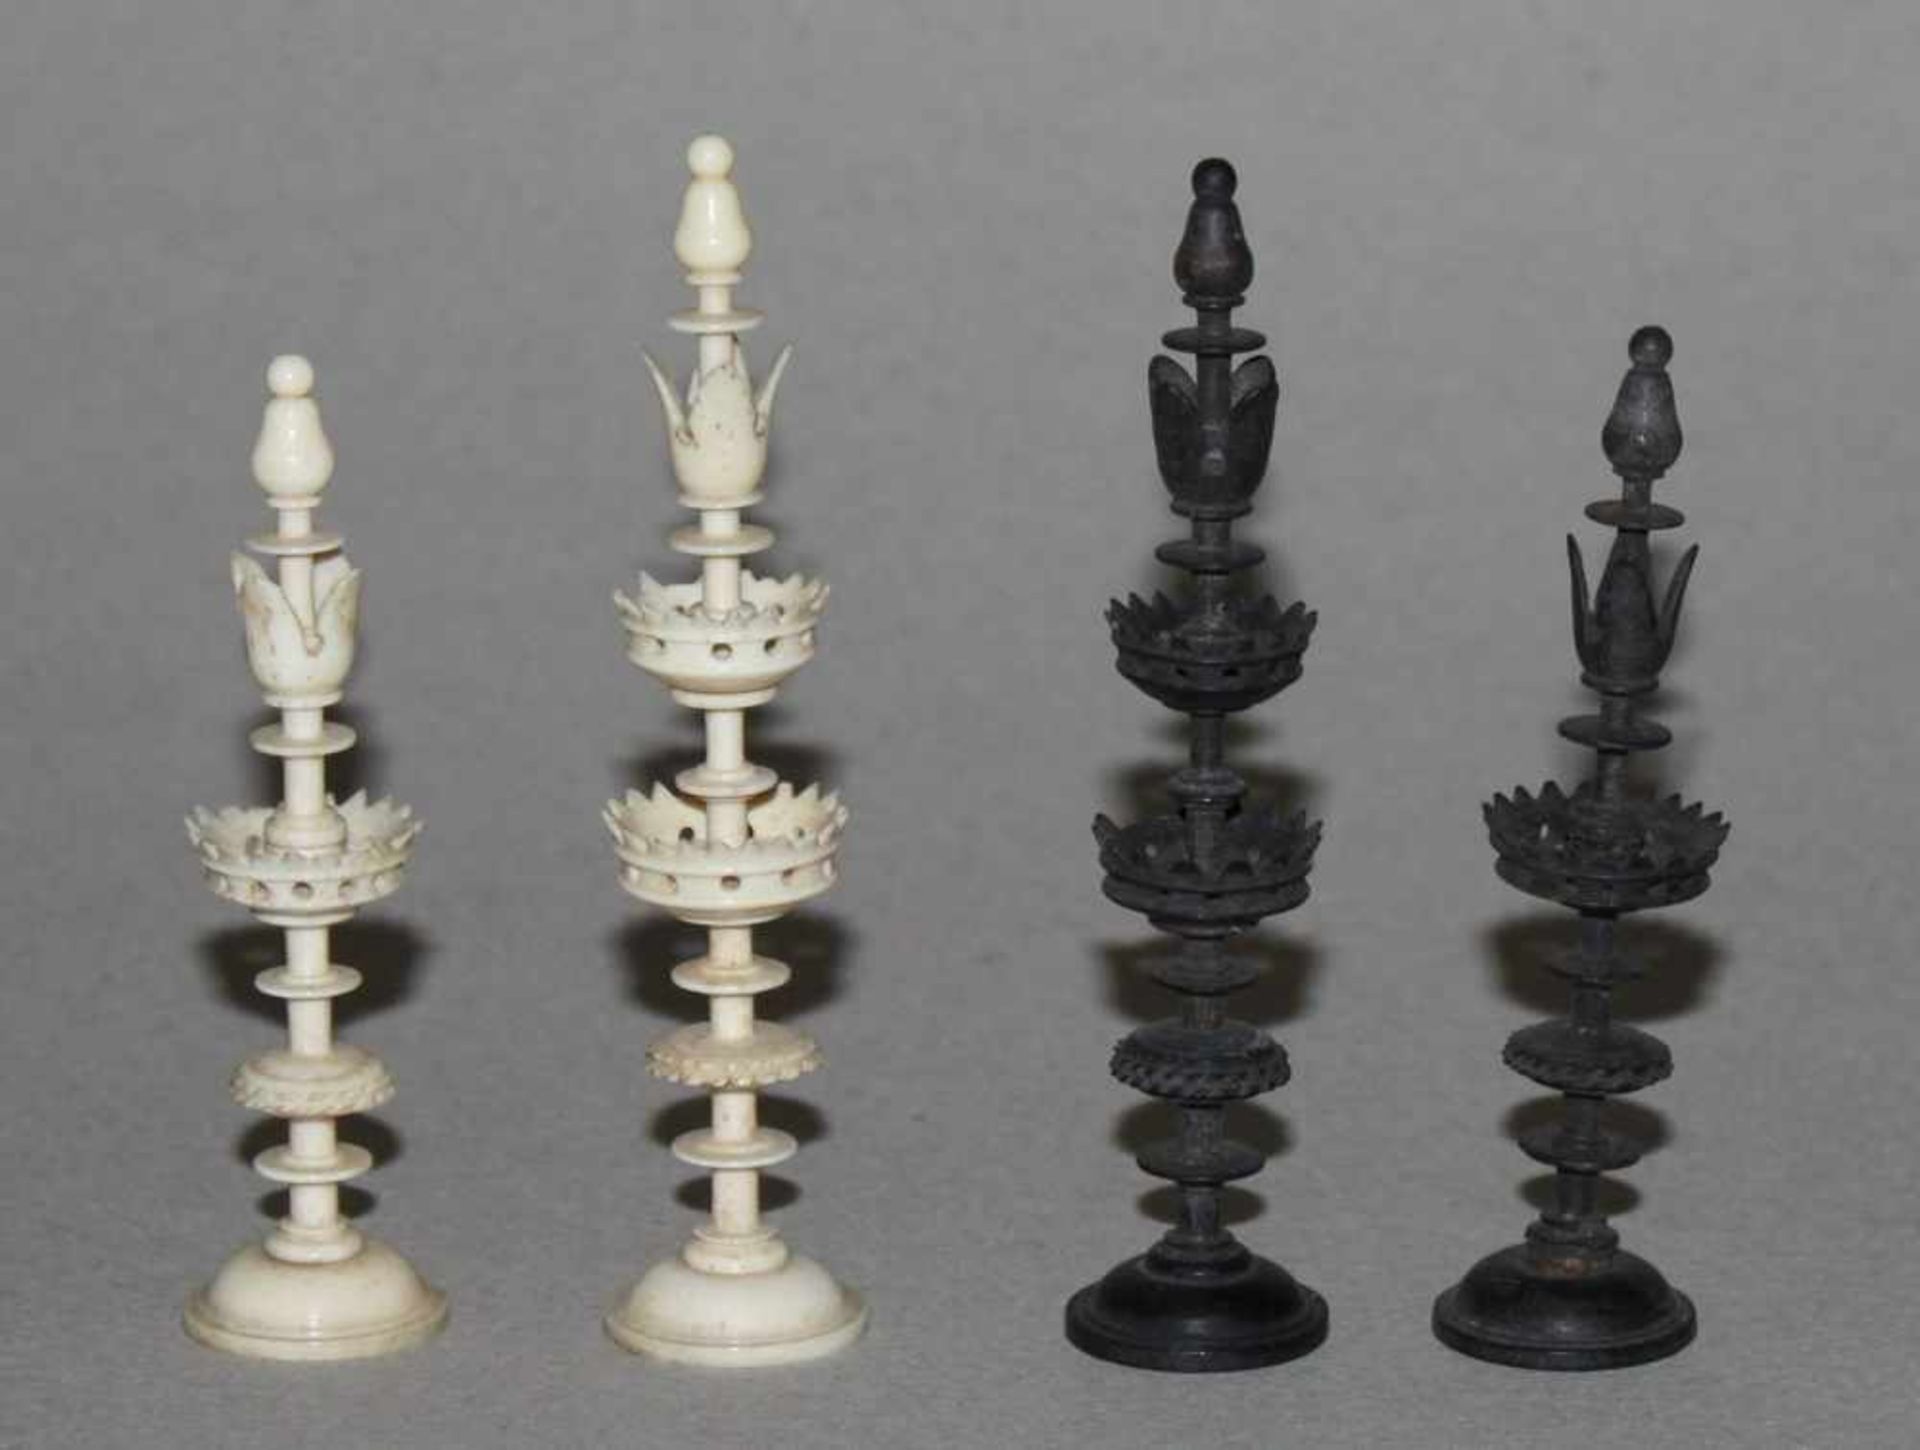 Europa. Deutschland. Schachfiguren aus Beinin Anlehnung an den Selenus - Stil mit einem doppelt